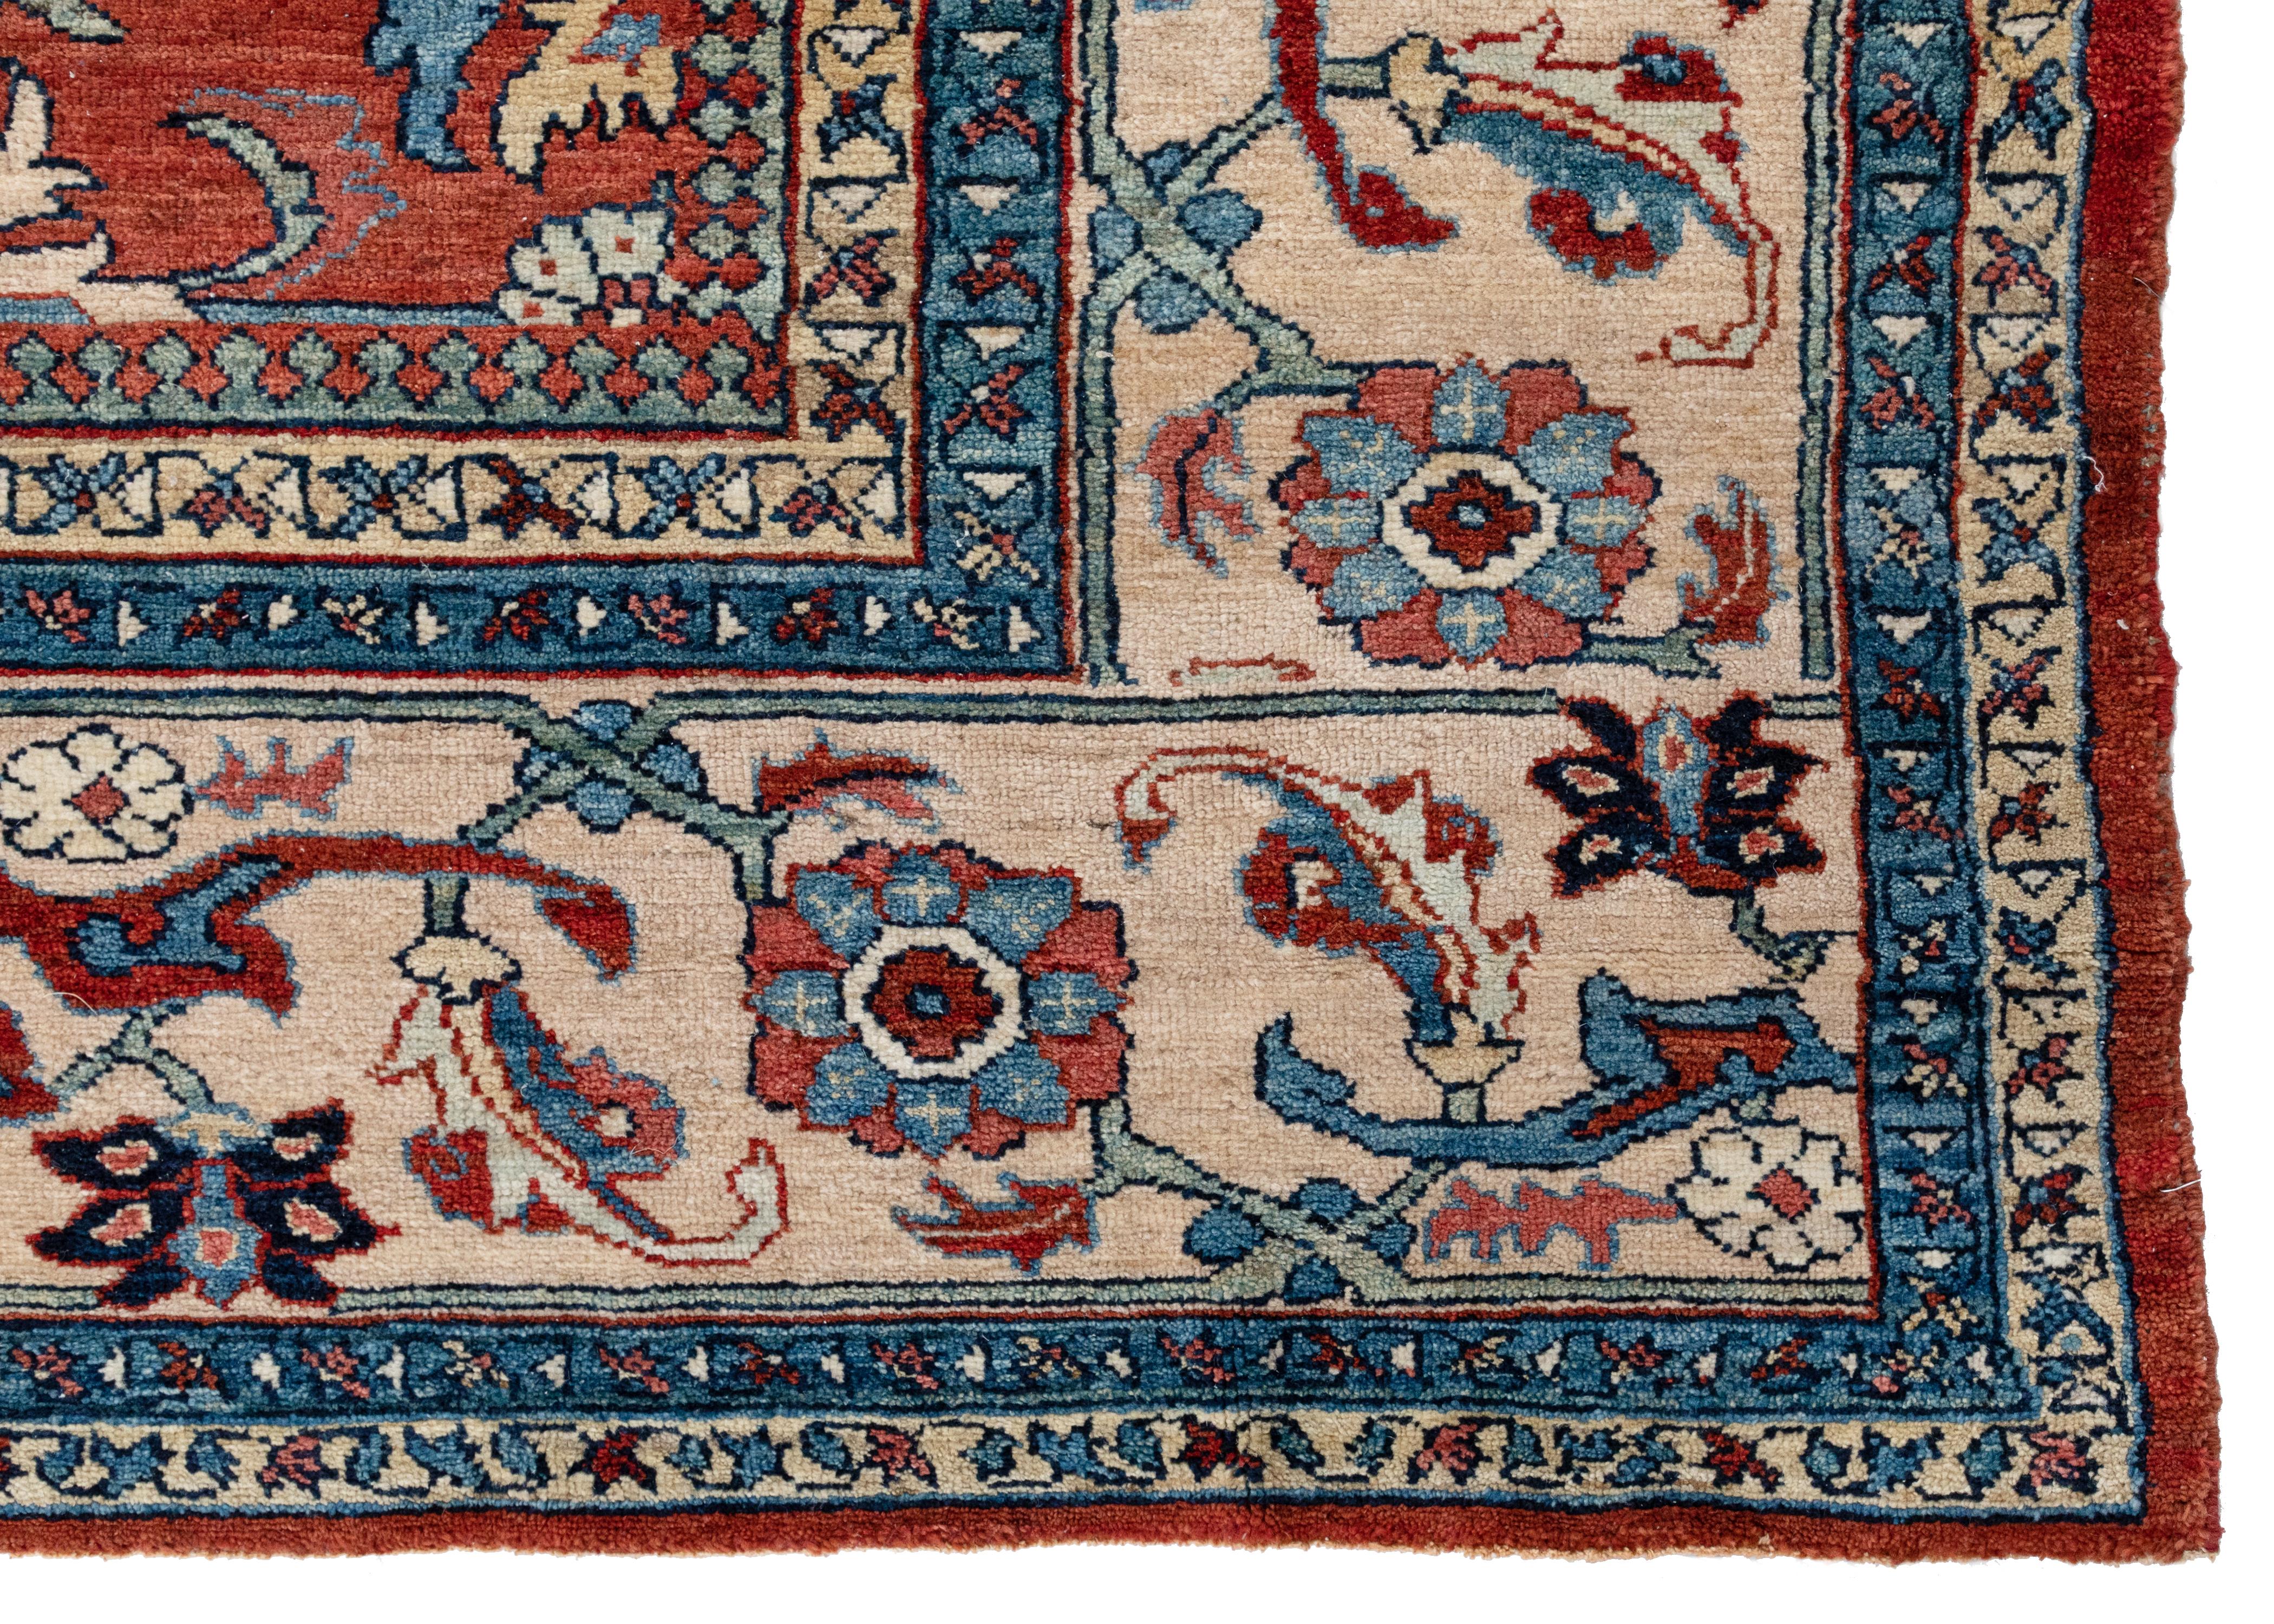 Persische Mahal-Teppiche haben sich seit dem 19. Jahrhundert einen Namen in der Knüpfkultur gemacht. Das raffinierte und eigenwillige Design dieser Schönheiten hebt sie vom Rest der Teppiche ab. Sie sind sehr dekorativ, wenn es um Ästhetik geht, und